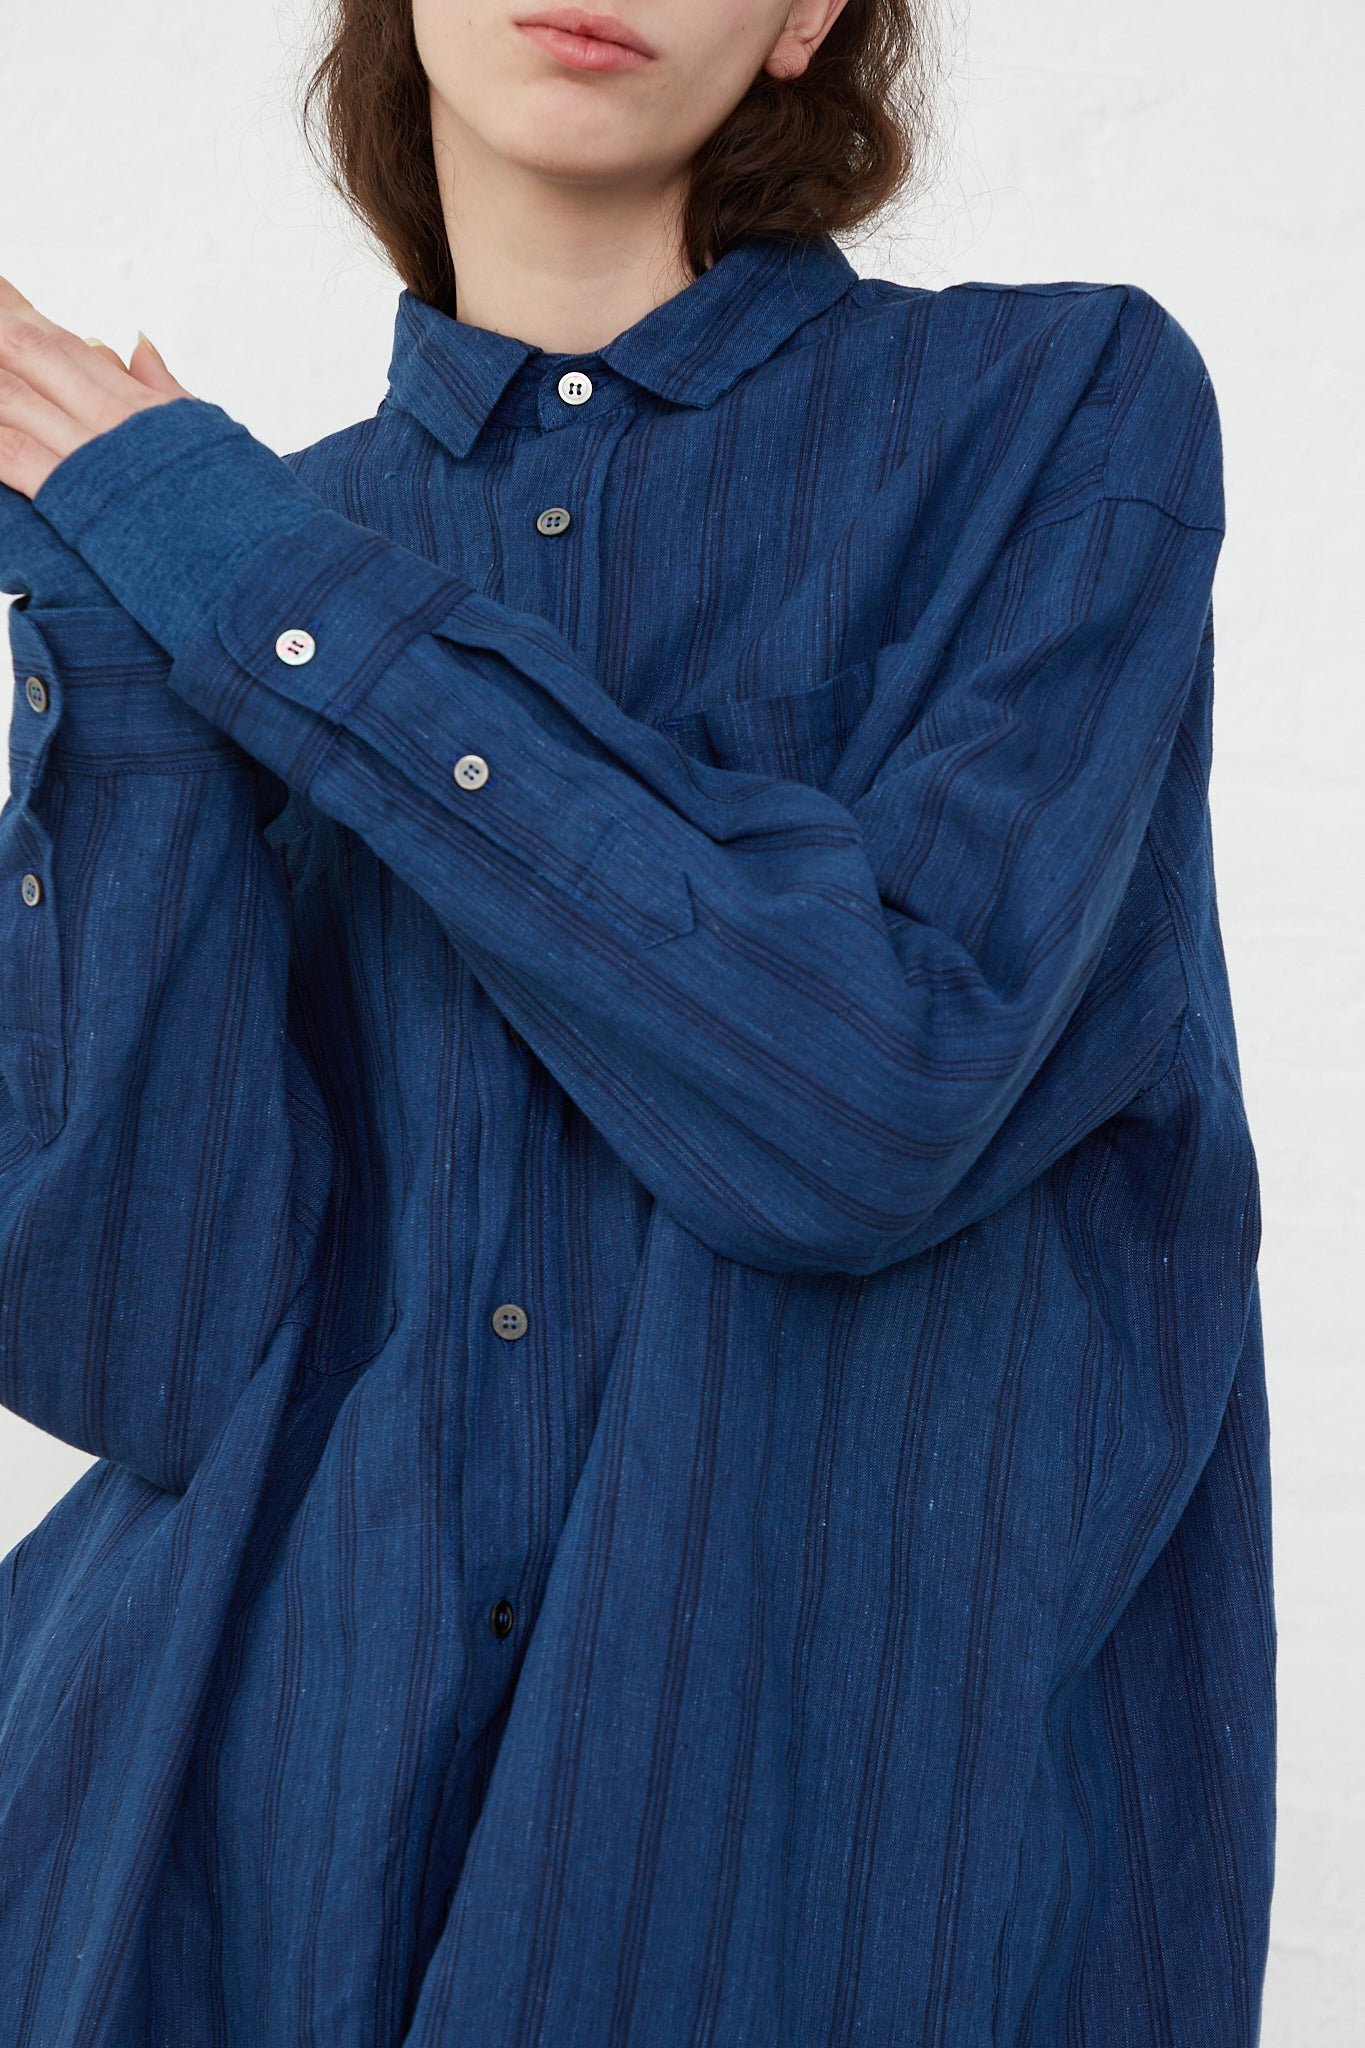 A model wearing a relaxed fit Ichi Antiquités Woven Linen Shirt in Indigo Stripes.